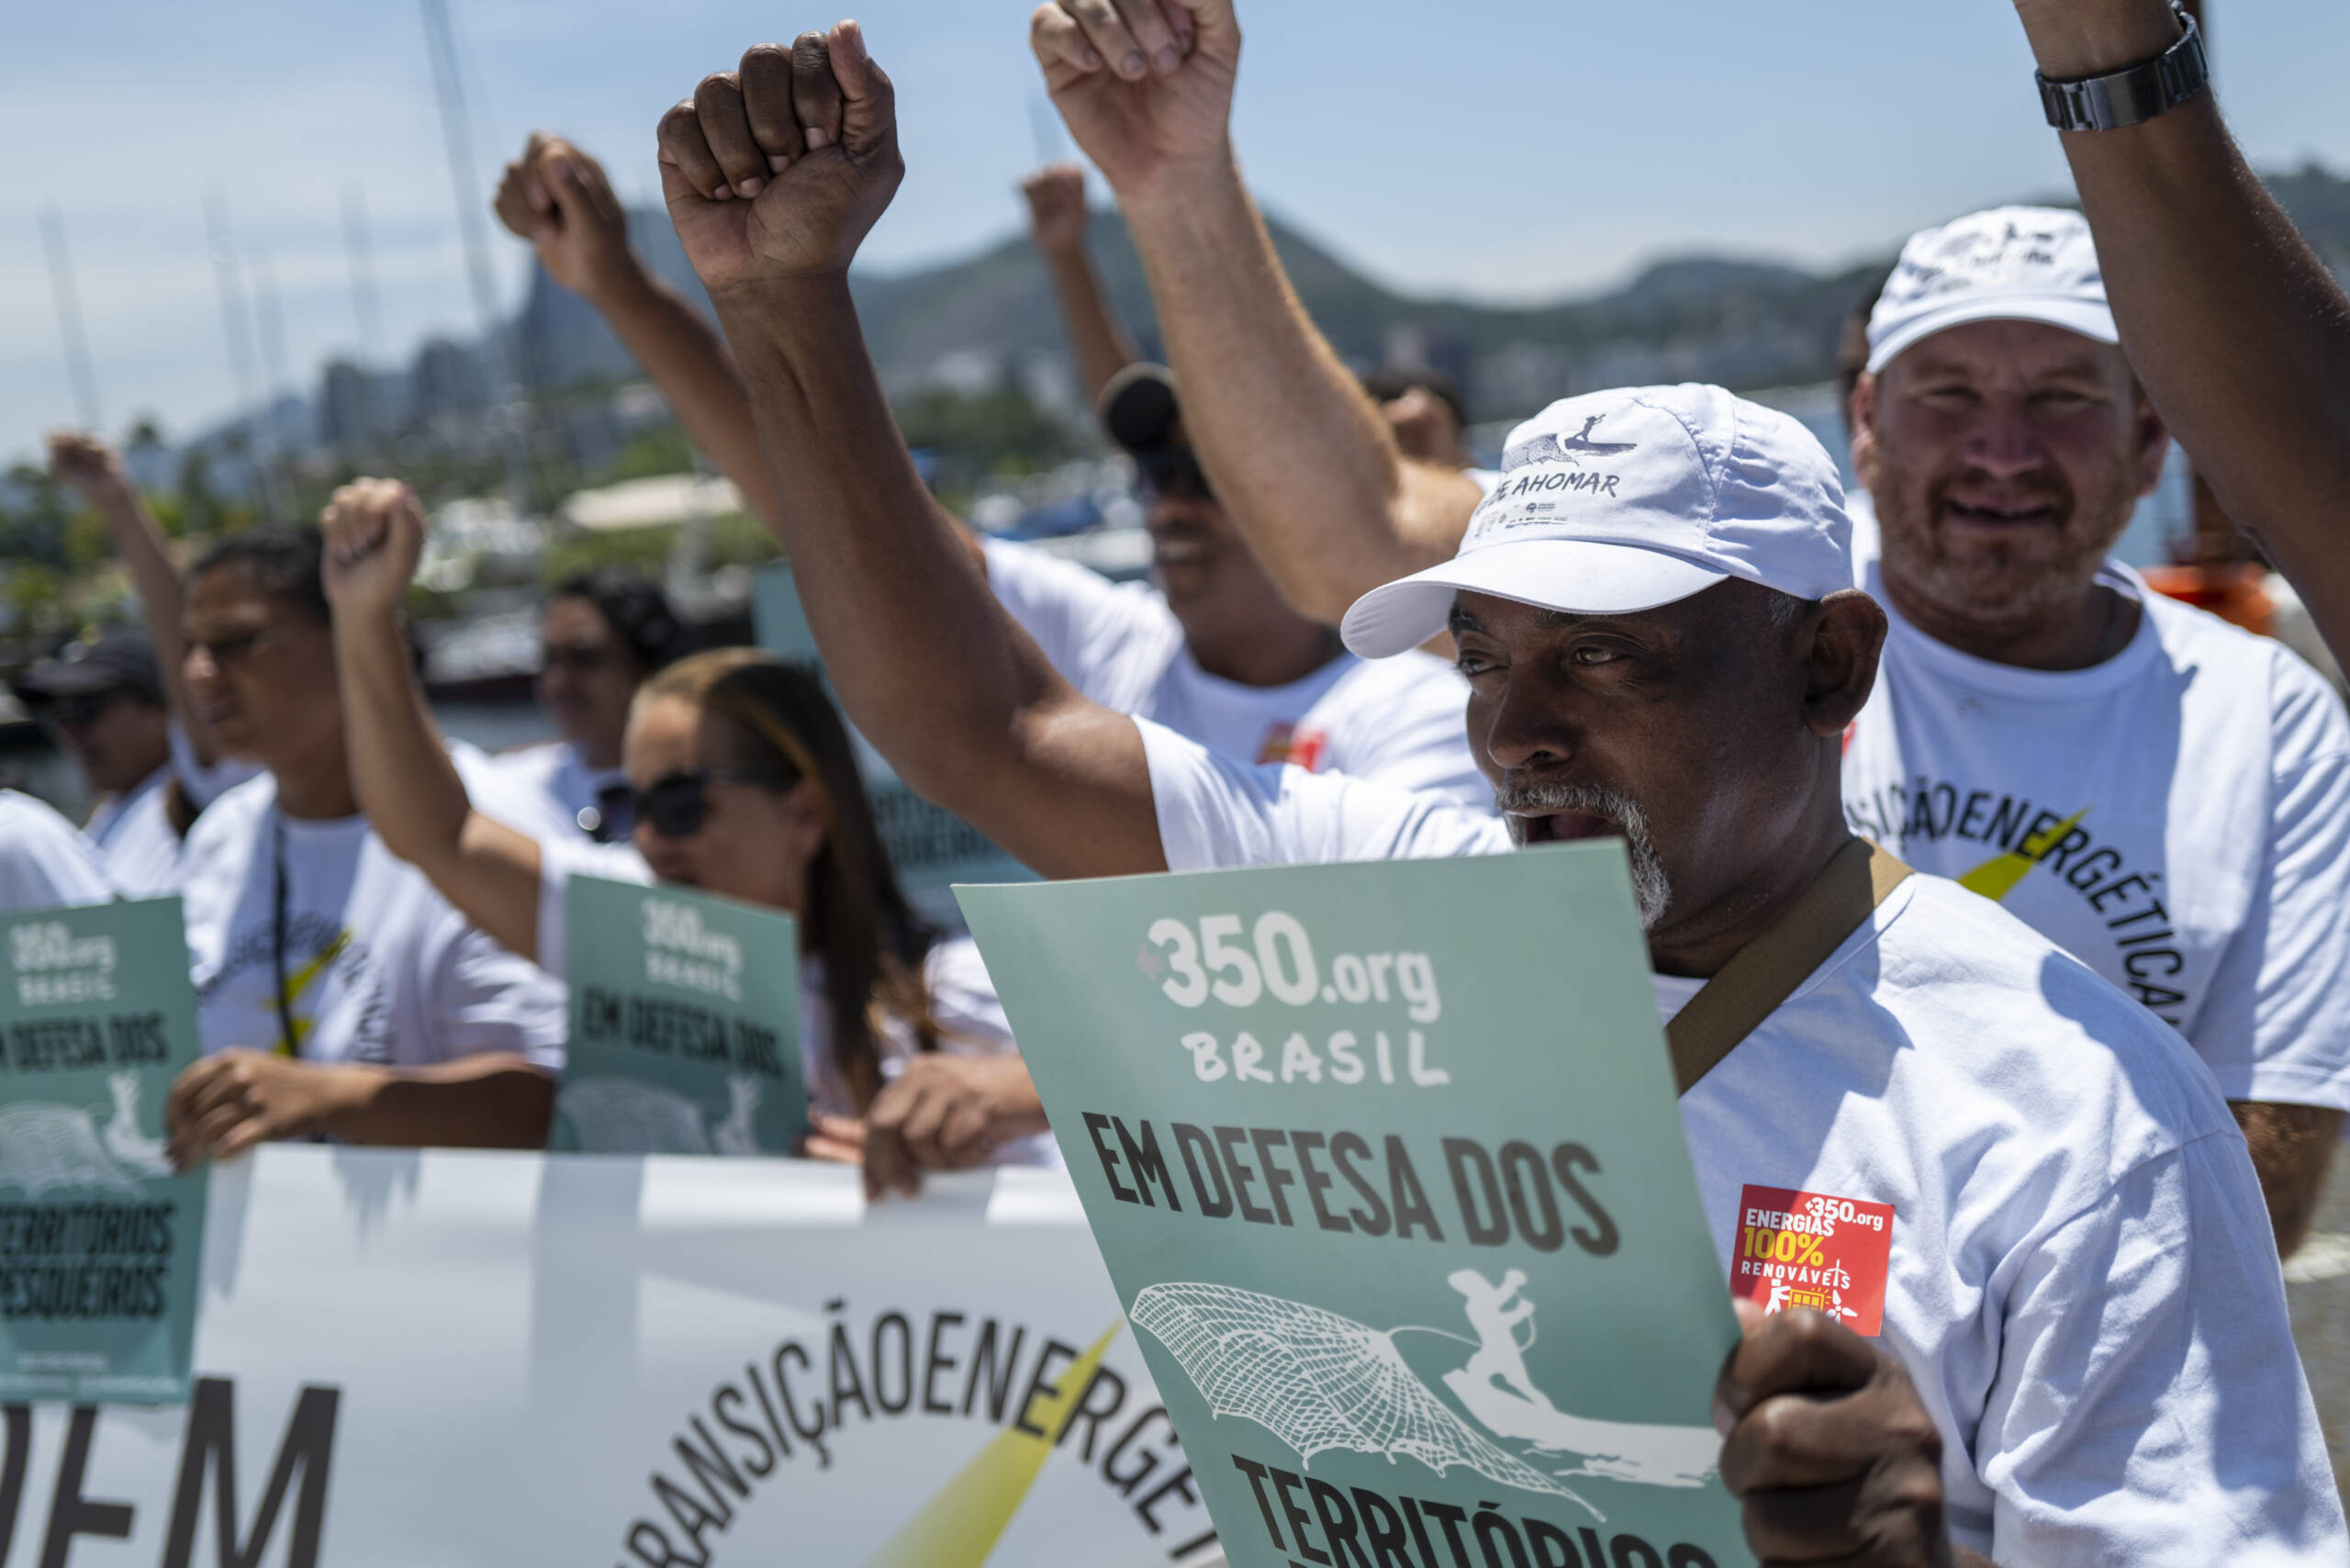 Rio de Janeiro, Brésil, le 3 novembre : des pêcheurs protestent devant la baie de Guanabara pour exiger du gouvernement brésilien qu’il cesse de subventionner le pétrole et le gaz et qu’il investisse plus dans les sources d’énergie renouvelable. Crédit photo : Lucas Landau